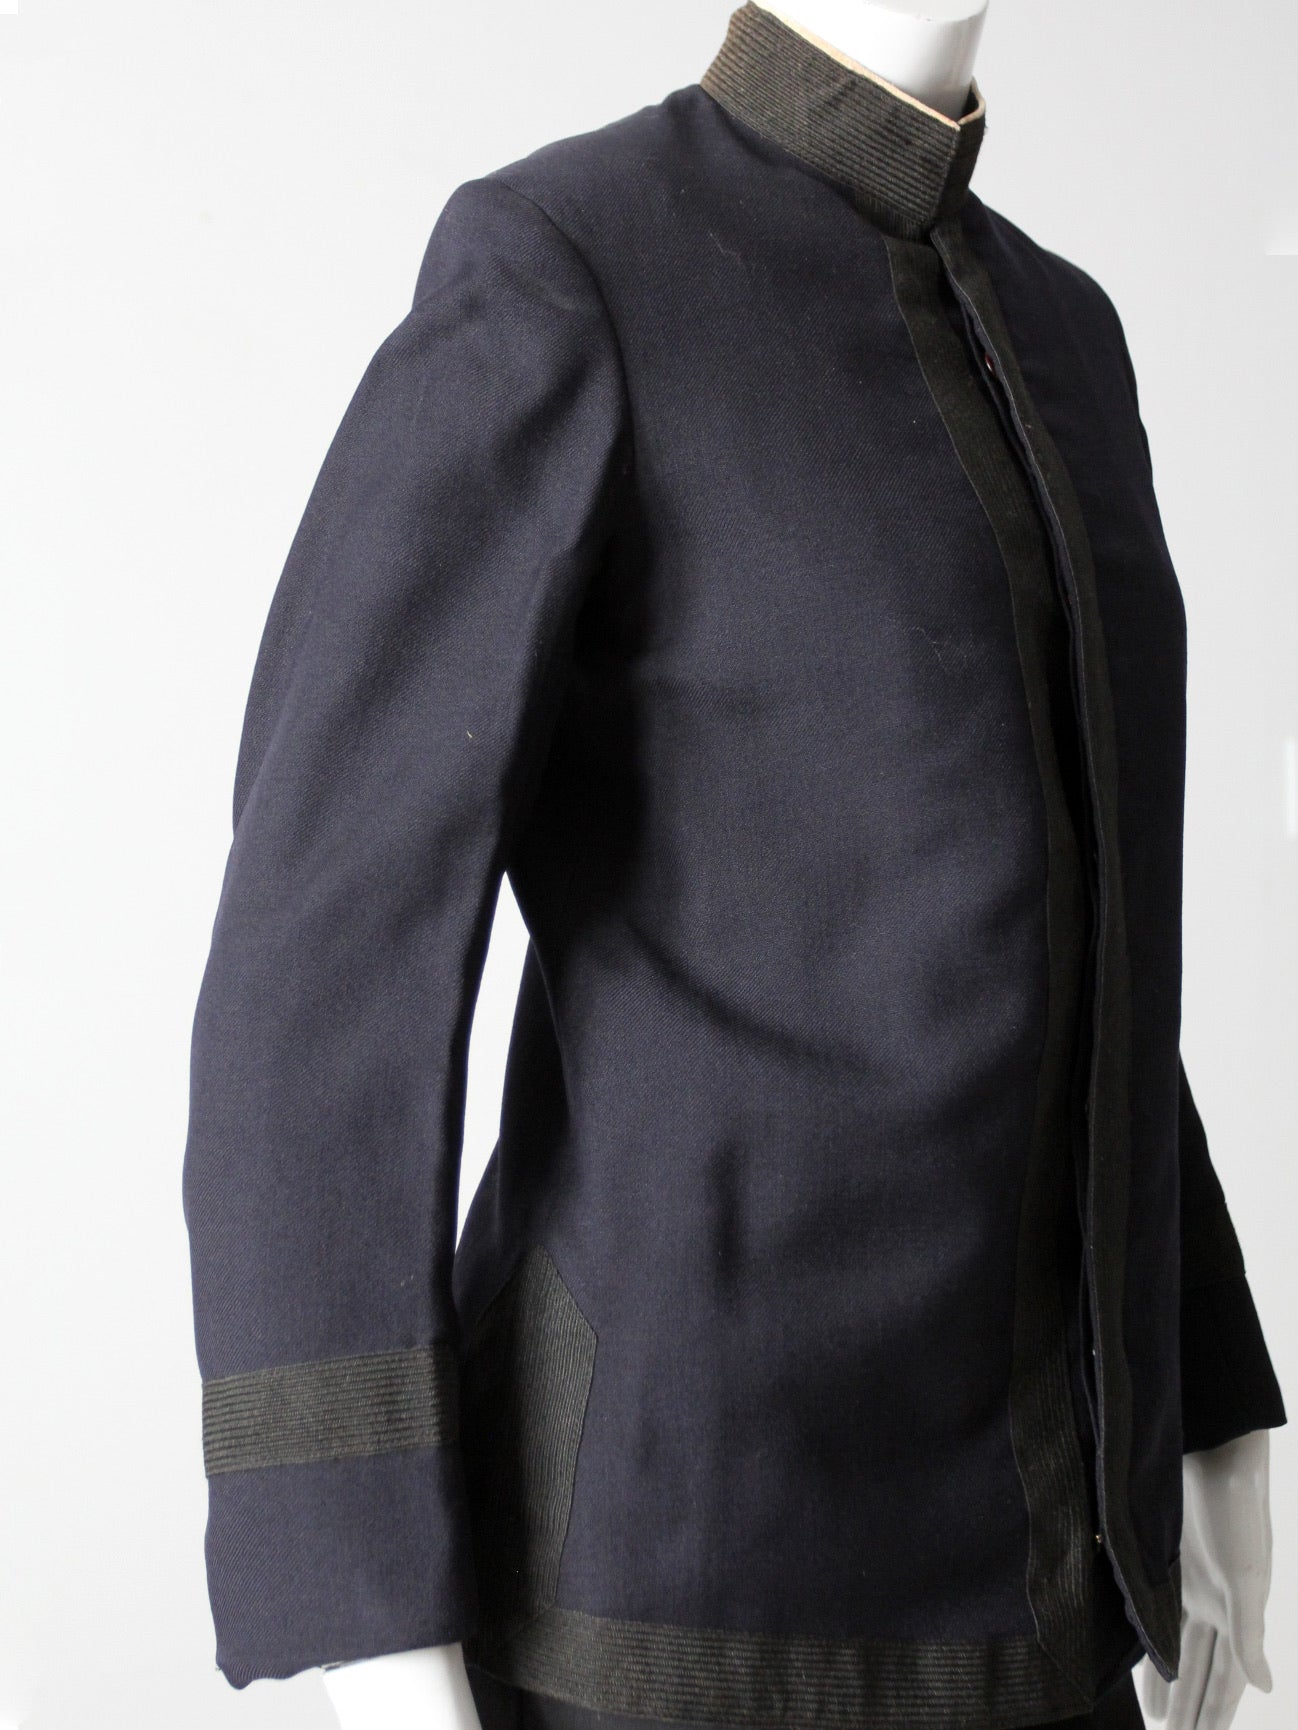 antique George Evans & Co uniform jacket